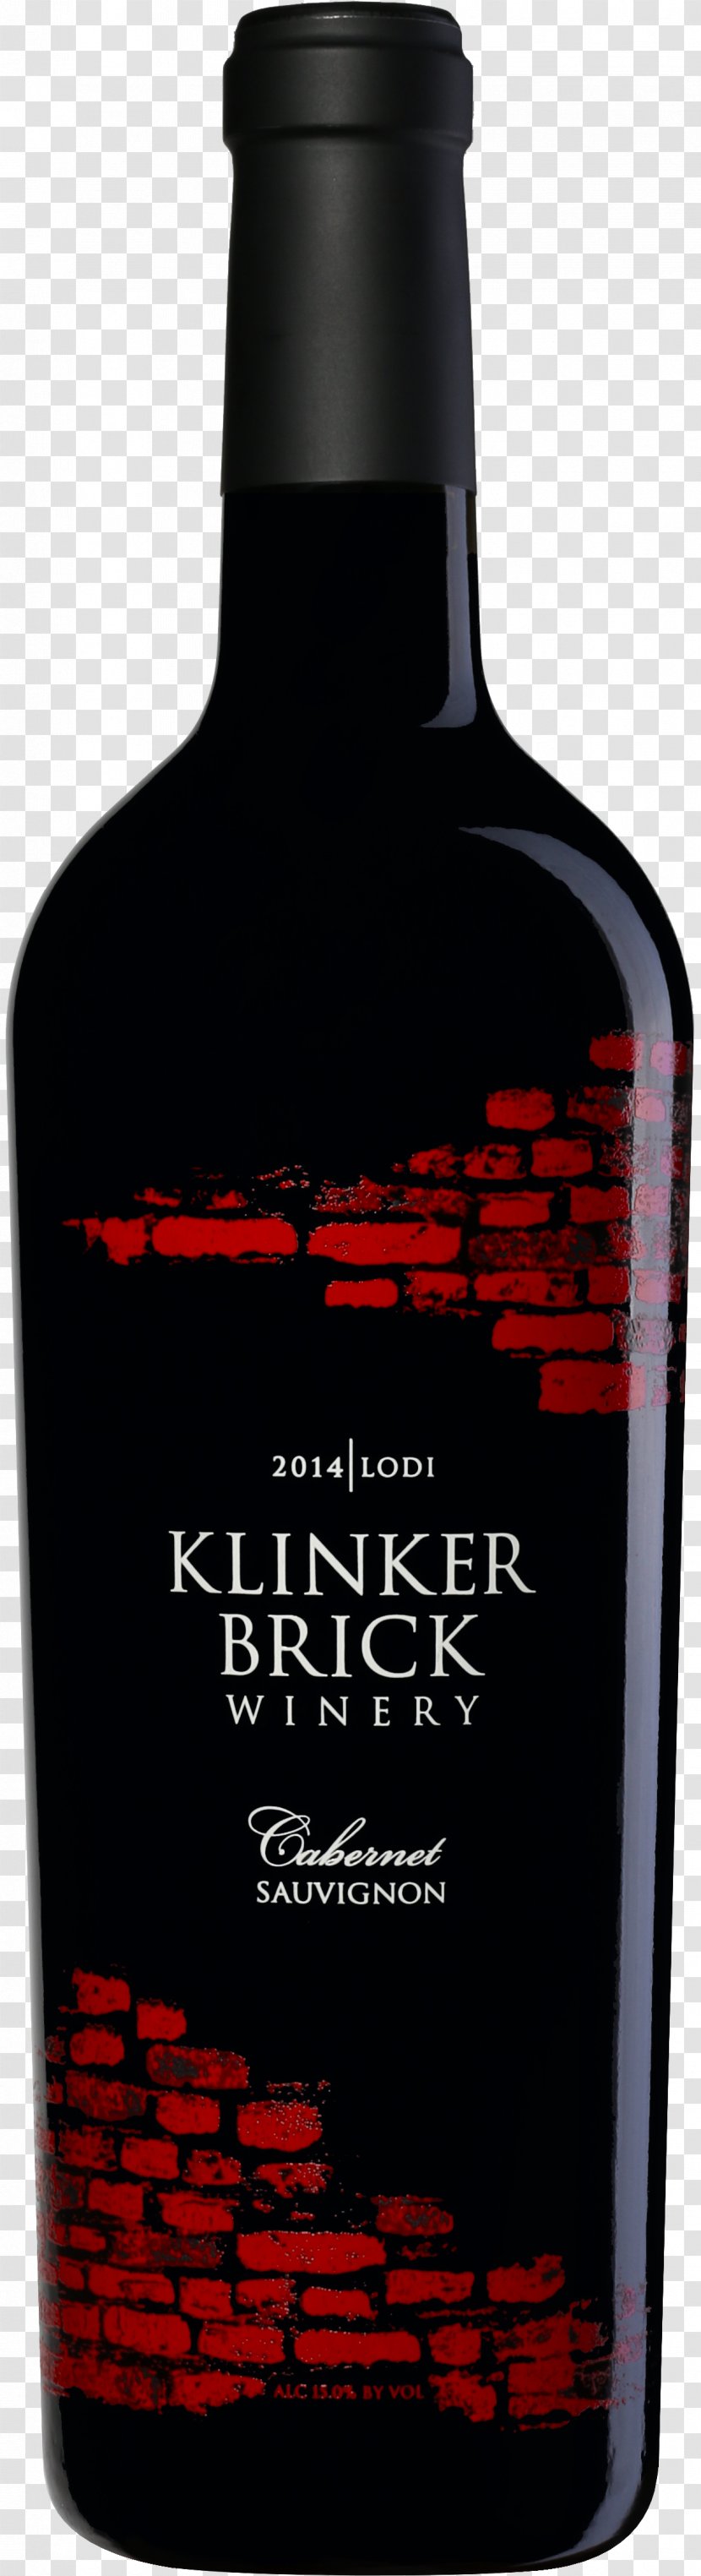 Klinker Brick Winery Liqueur Cabernet Sauvignon Zinfandel Blanc - Wine Bottle Transparent PNG